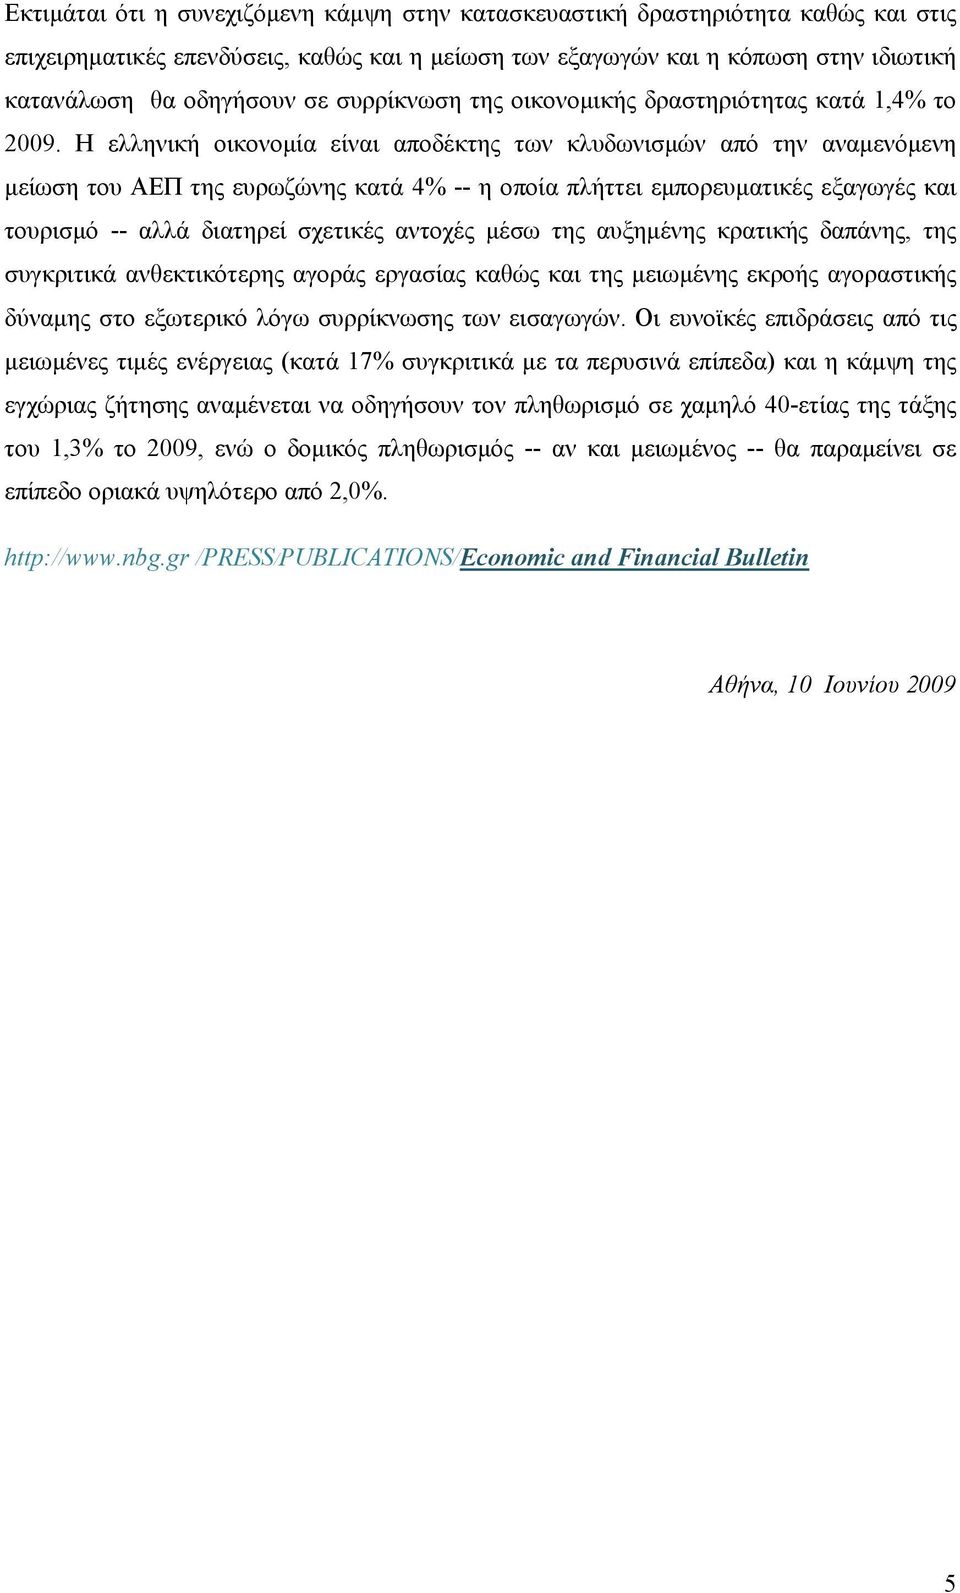 Η ελληνική οικονομία είναι αποδέκτης των κλυδωνισμών από την αναμενόμενη μείωση του ΑΕΠ της ευρωζώνης κατά 4% -- η οποία πλήττει εμπορευματικές εξαγωγές και τουρισμό -- αλλά διατηρεί σχετικές αντοχές